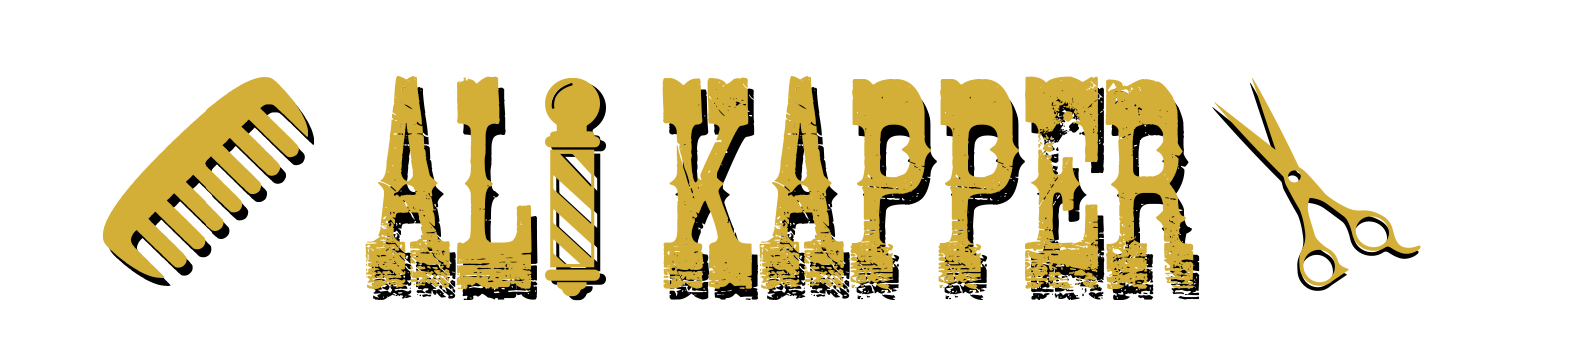 ali-kapper-groningen-logo